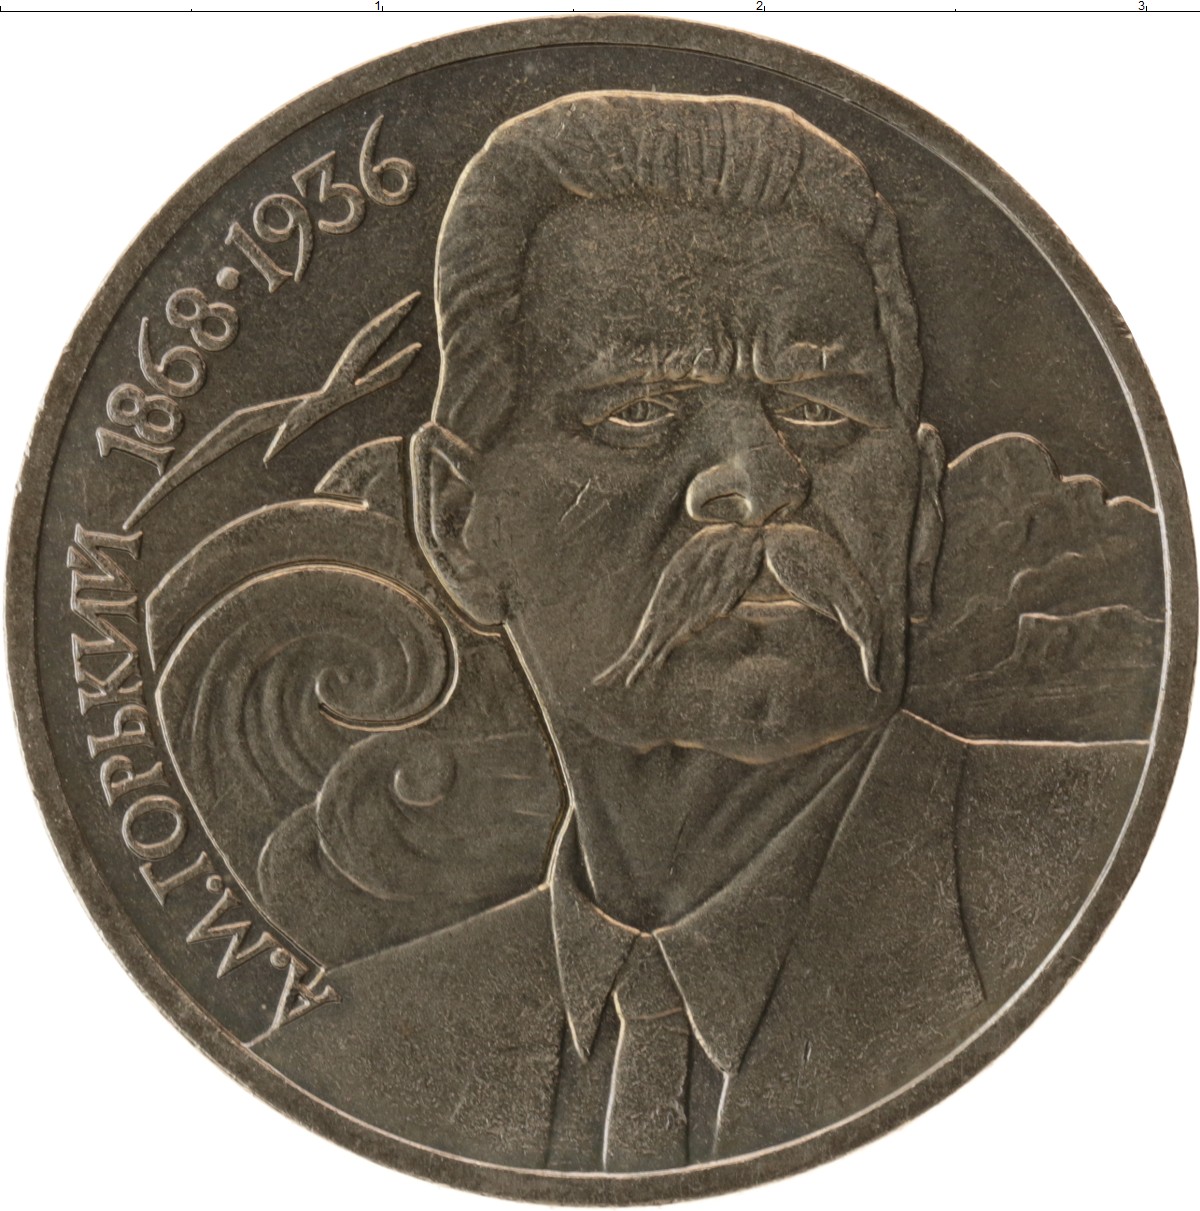 5 рублей медные. Монета 1 рубль 1988 Горький. 1 Рубль 1988 UNC. 1 Рубль Горький. 1 Рубль а. м. Горький.